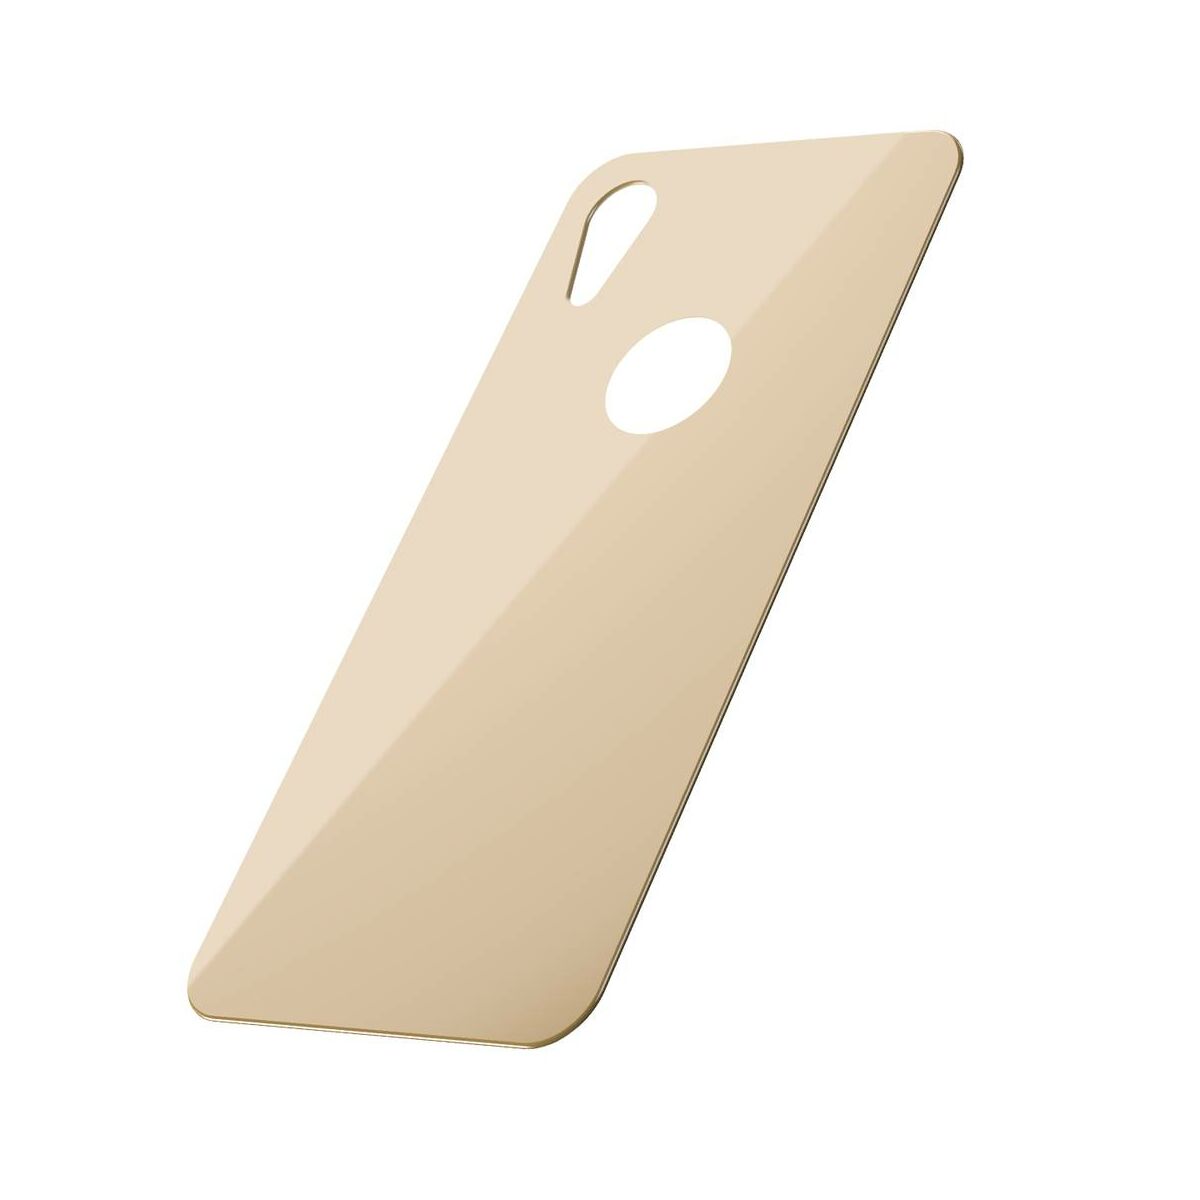 Kép 3/9 - Baseus iPhone XR/ 11 (6.1") 0.3 mm, teljes felületre edzett üveg hátlap védő fólia, arany (SGAPIPH61-BM0V)